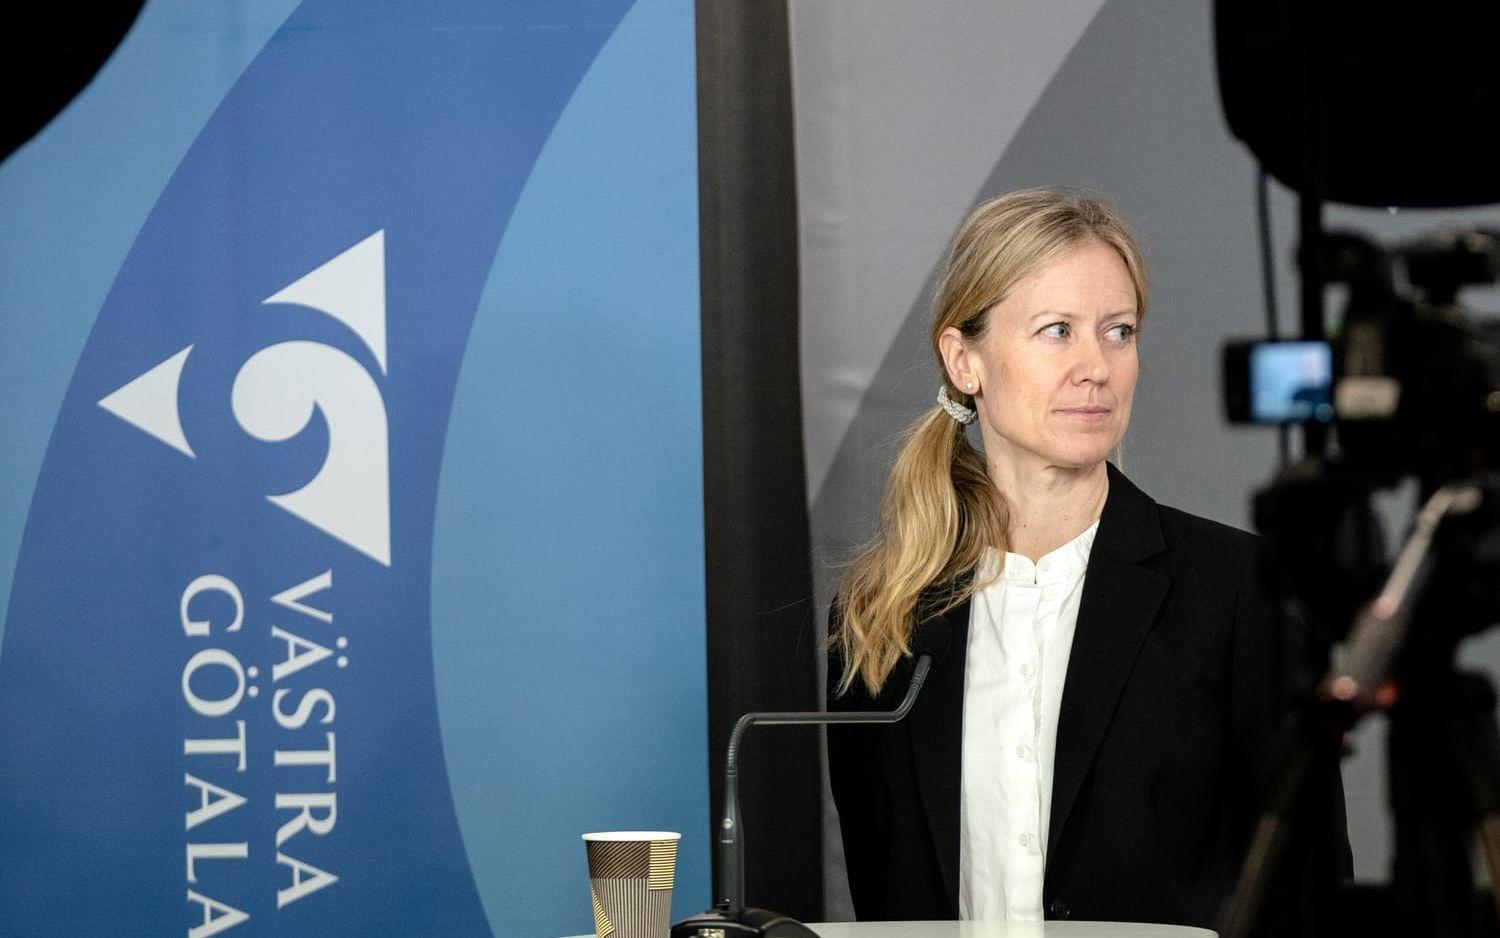 Kristine Rygge, vaccinationssamordnare i Västra Götalandsregionen, vill i nuläget inte spekulera kring vad Astra Zenecas problem innebär för regionen: ”Först måste vaccinet bli godkänt och därefter får vi ta den diskussionen”.